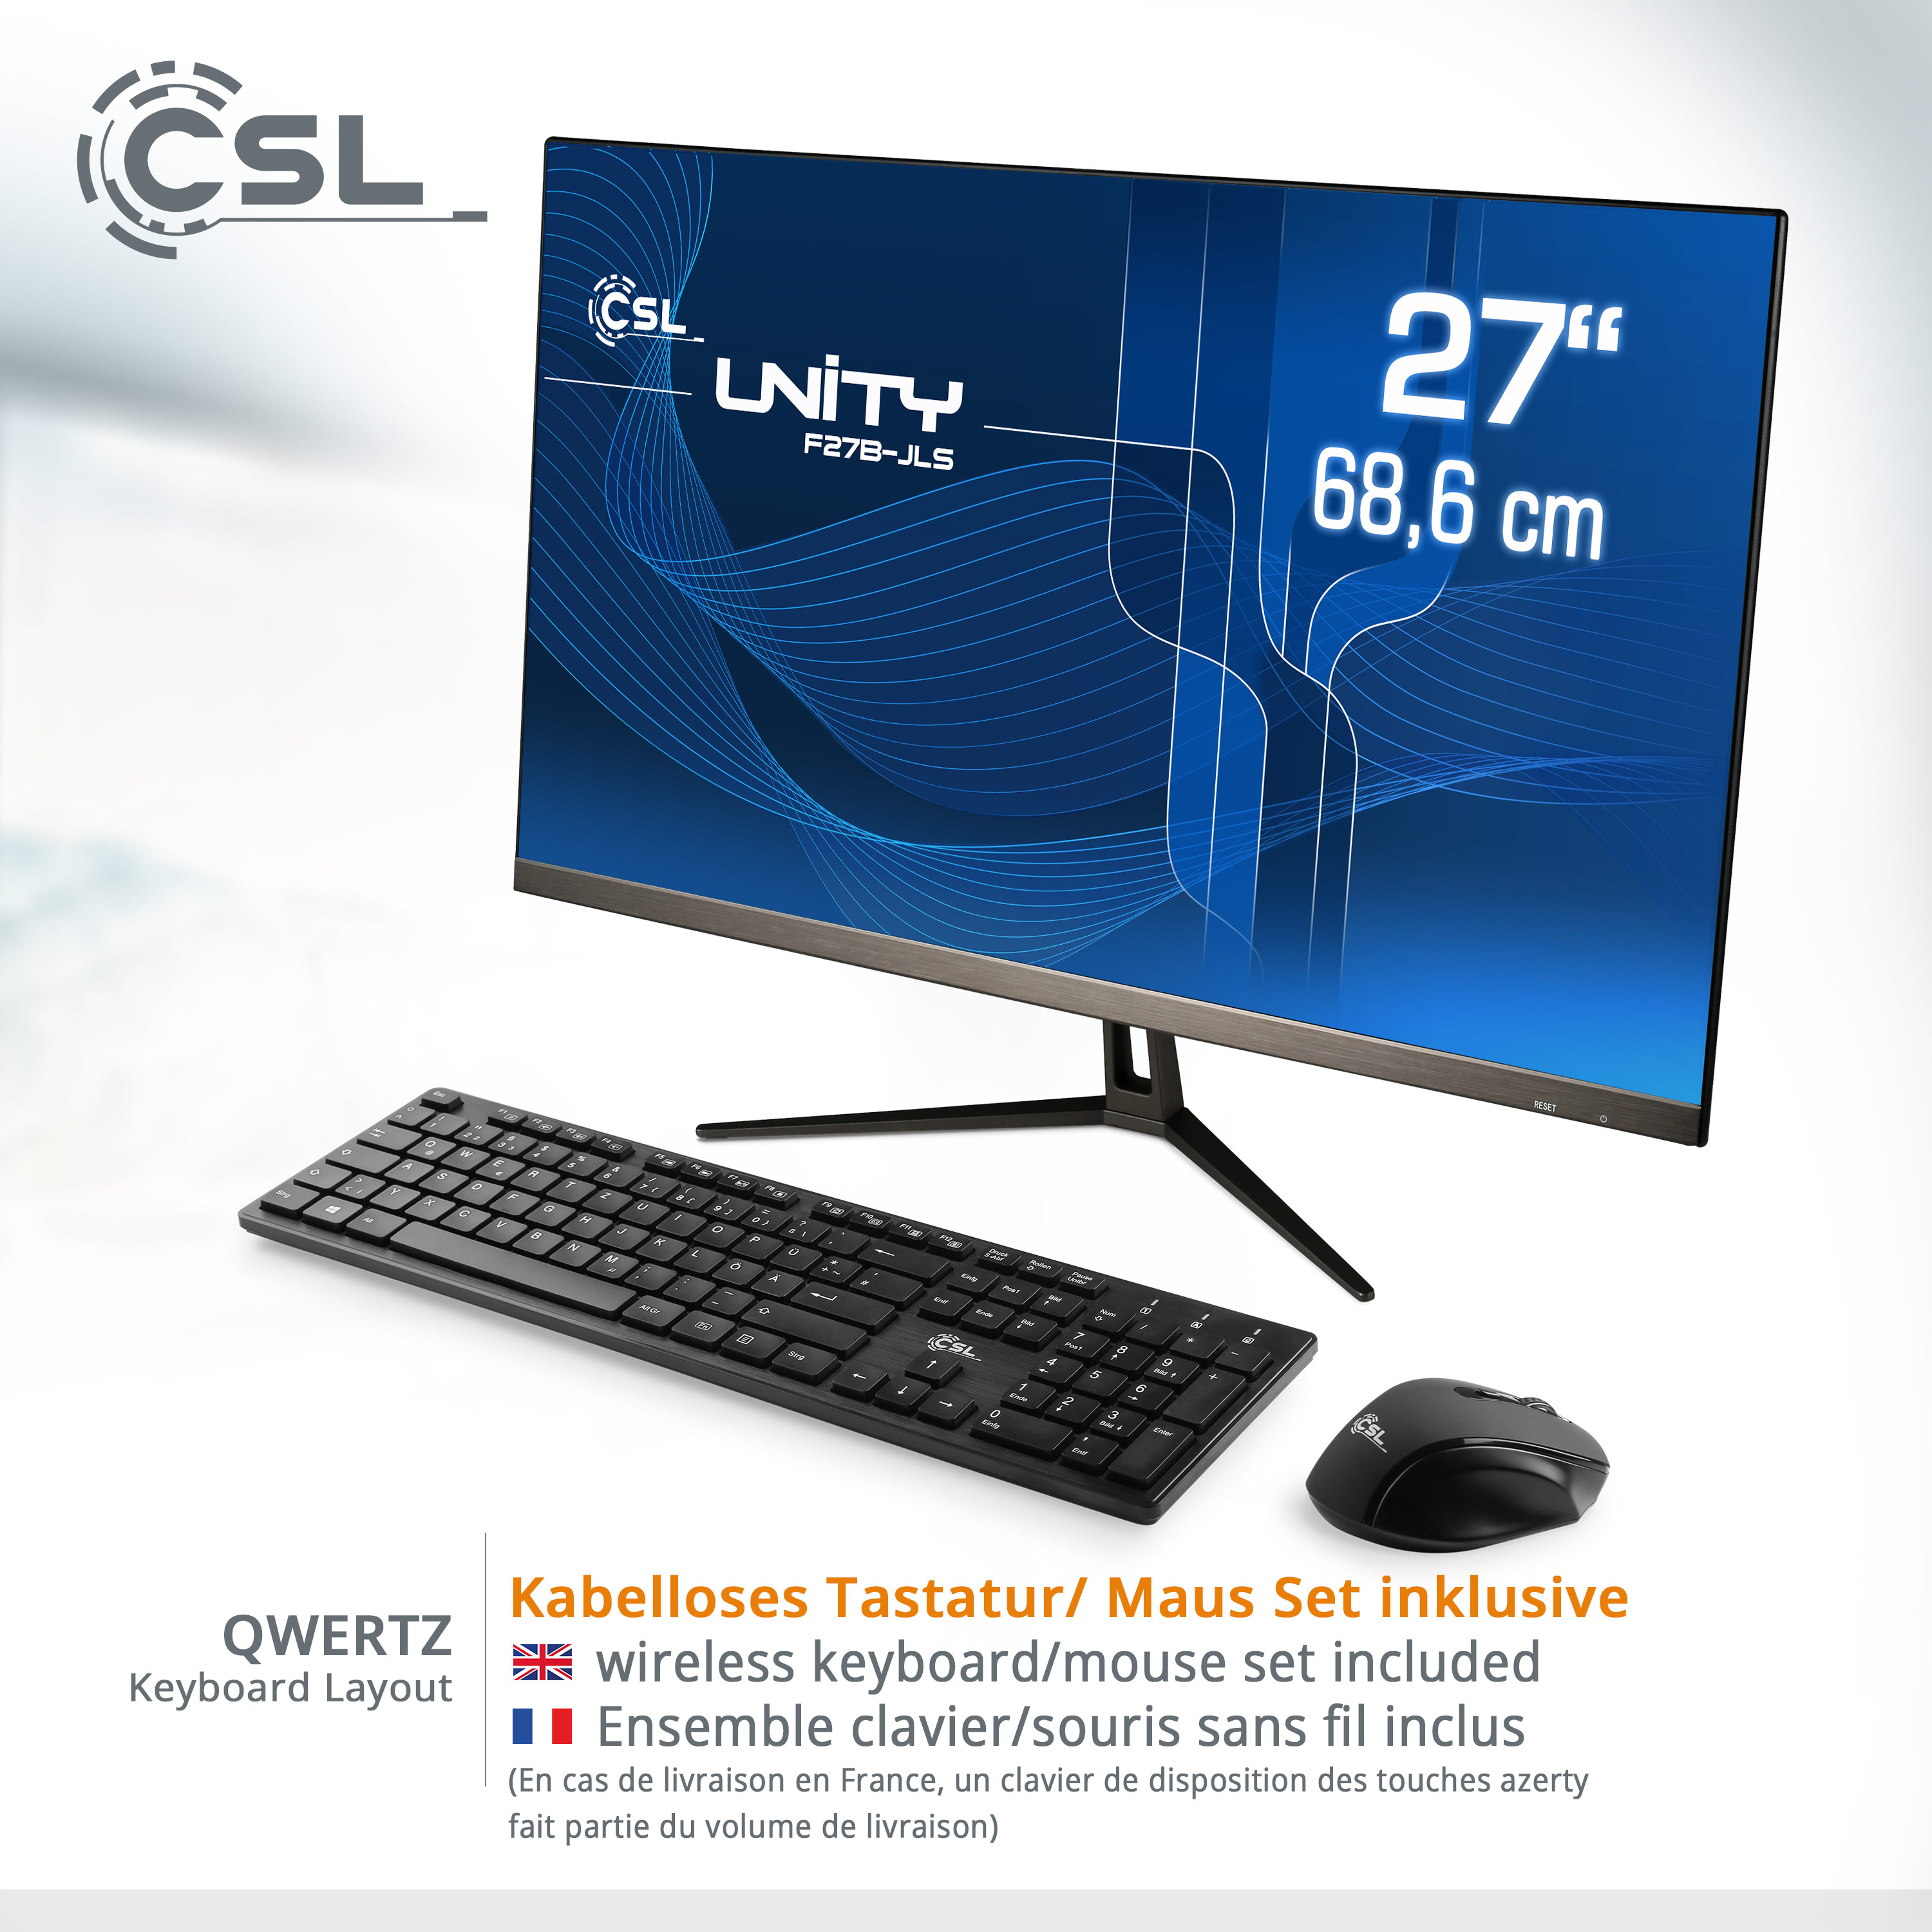 CSL Unity F27B-JLS / 256 GB 16 27 mit Graphics, All-in-One-PC GB RAM RAM, GB 256 Zoll / SSD, schwarz Display, 10 Intel® GB / Pro, 16 UHD Win